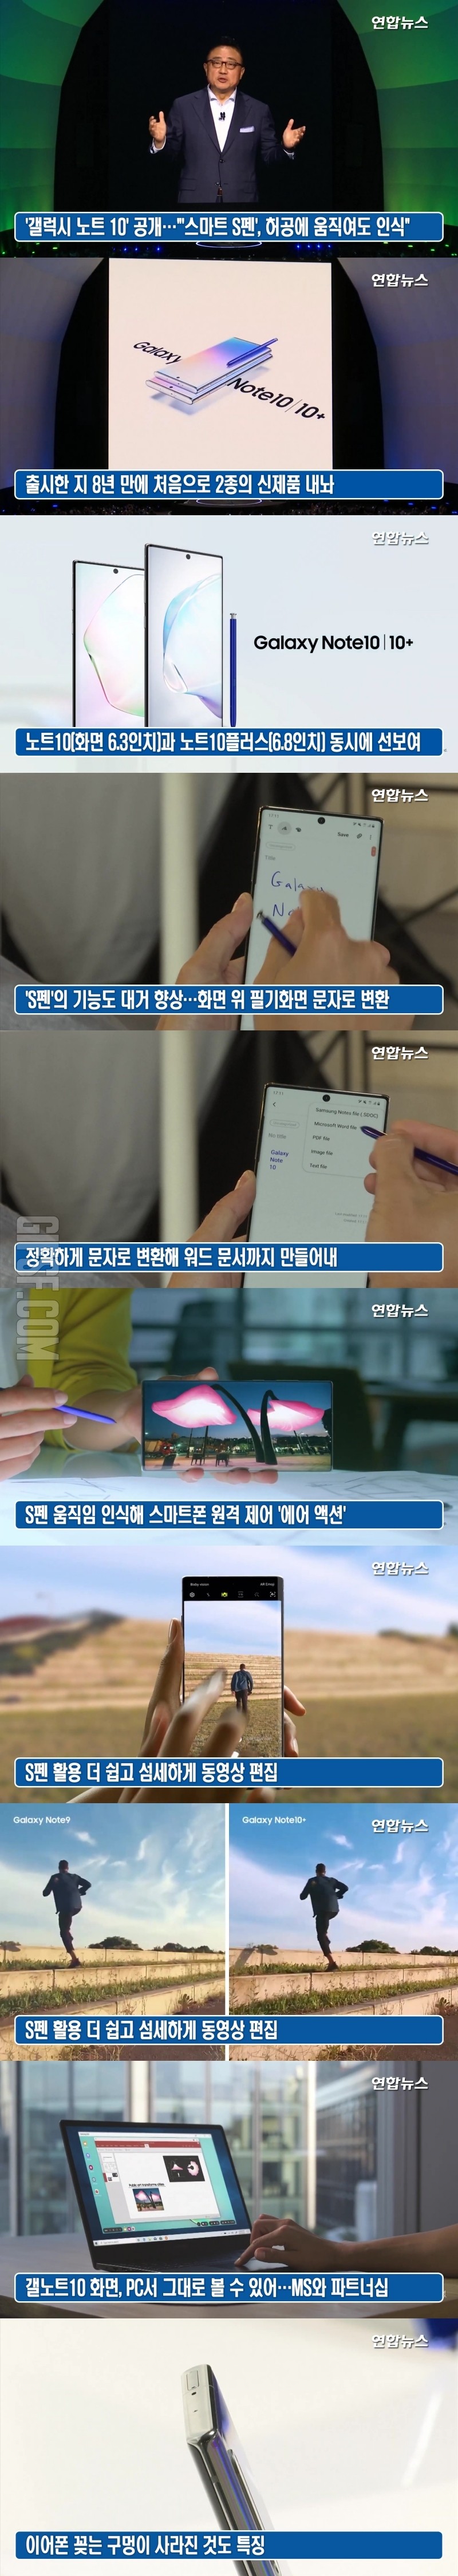 ',갤럭시 노트10', 공개… S펜, 허공에 움직여도 인식 연합뉴스 .jpg